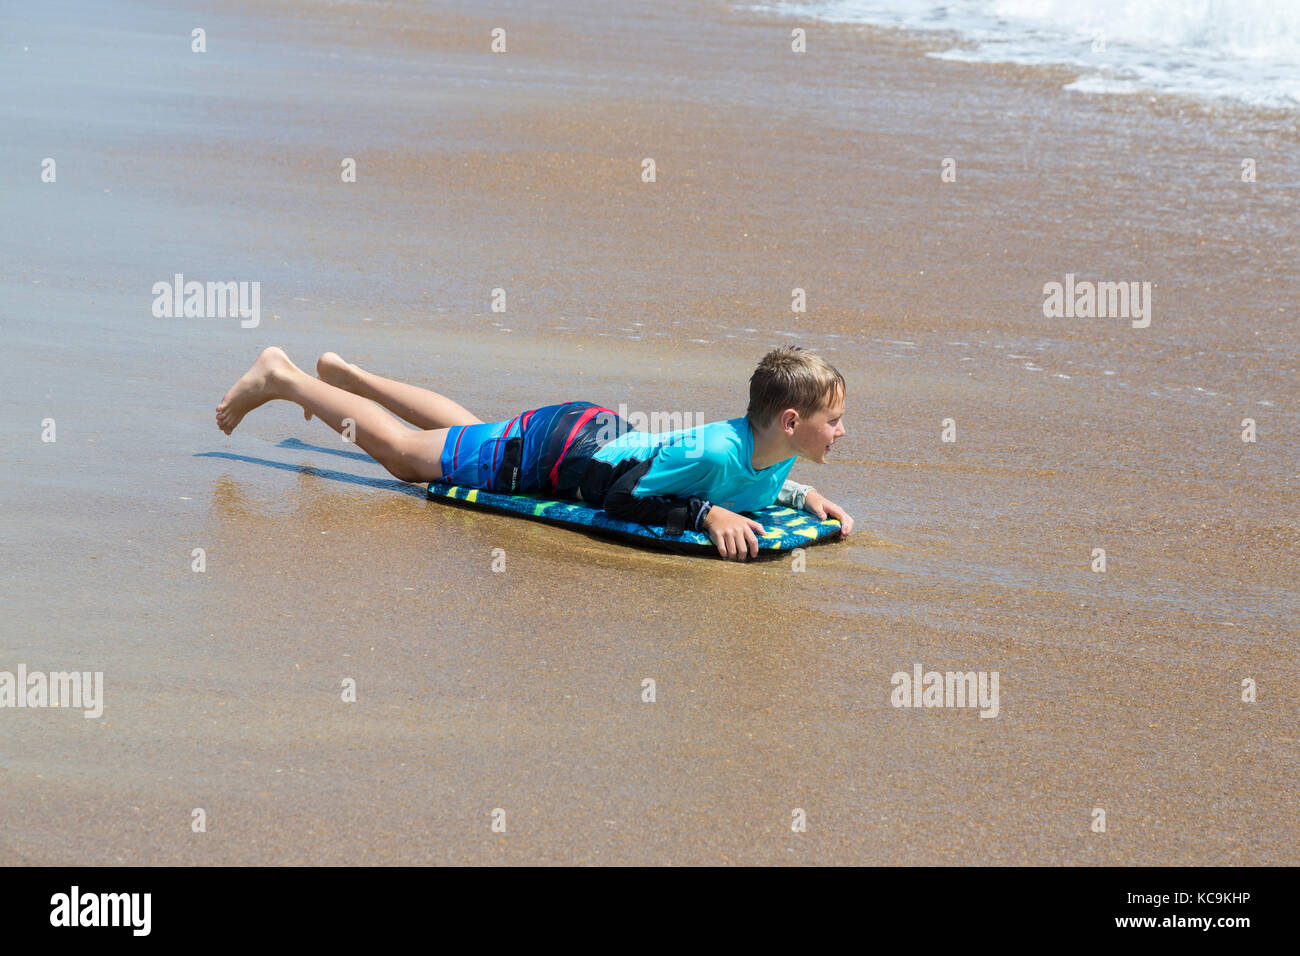 Avon, Outer Banks, North Carolina, Stati Uniti d'America. Ragazzo giovane collegato a massa sulla spiaggia con il suo boogie board. Foto Stock